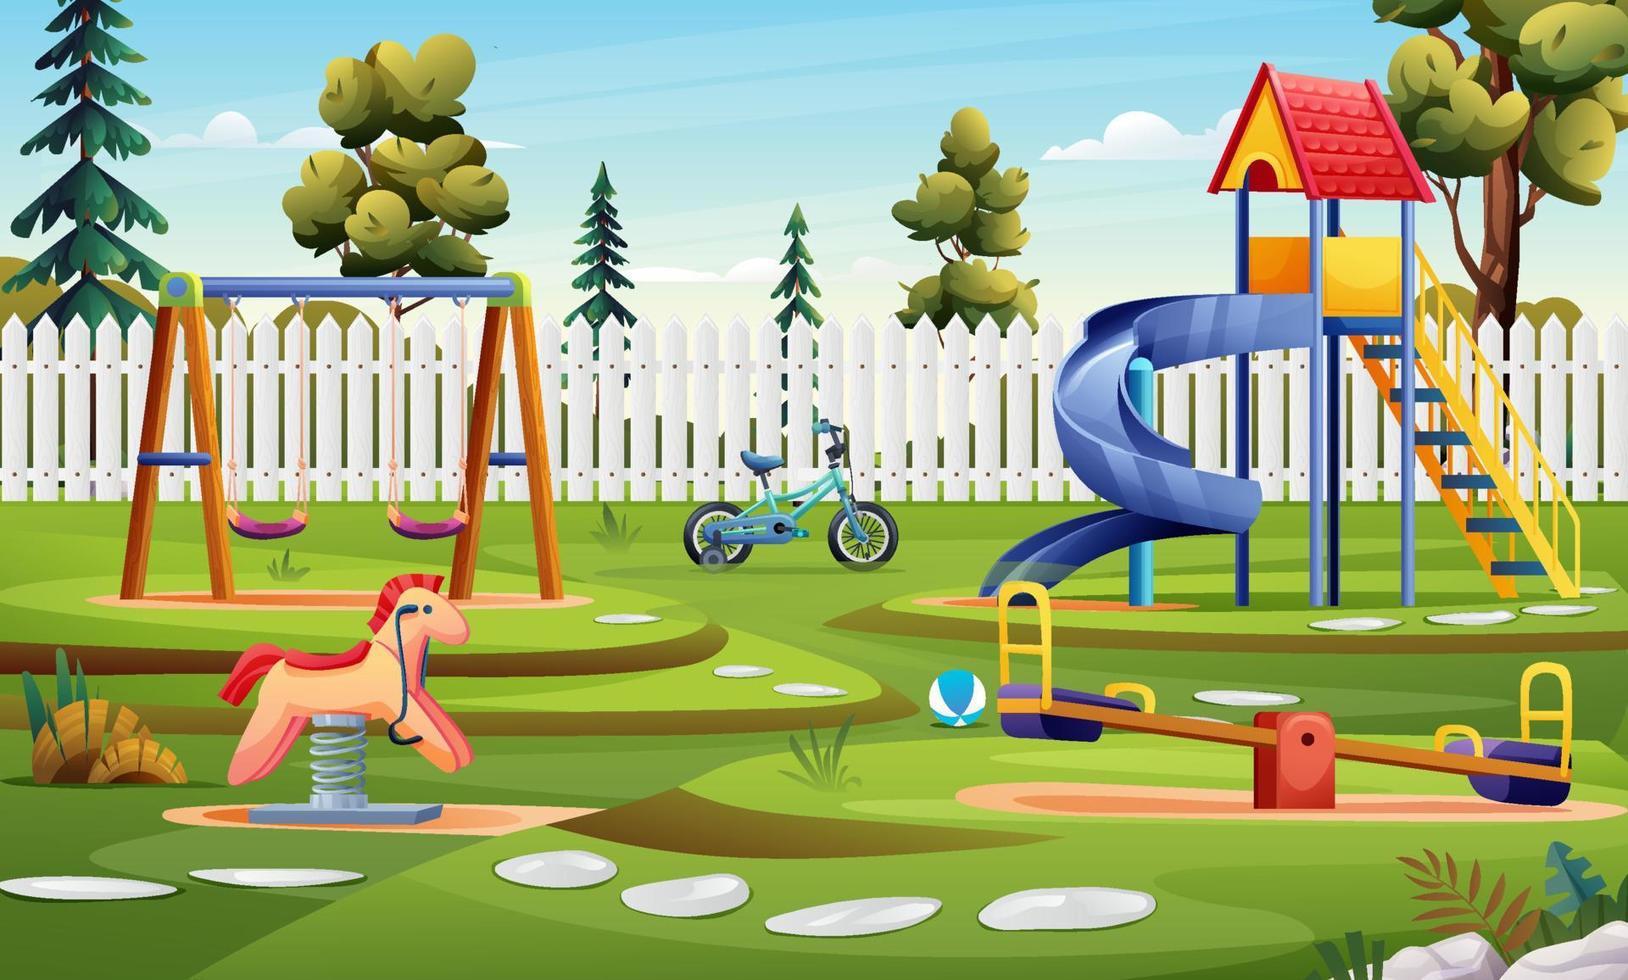 jardín de infantes con tobogán, columpio y bicicleta ilustración de dibujos animados vector